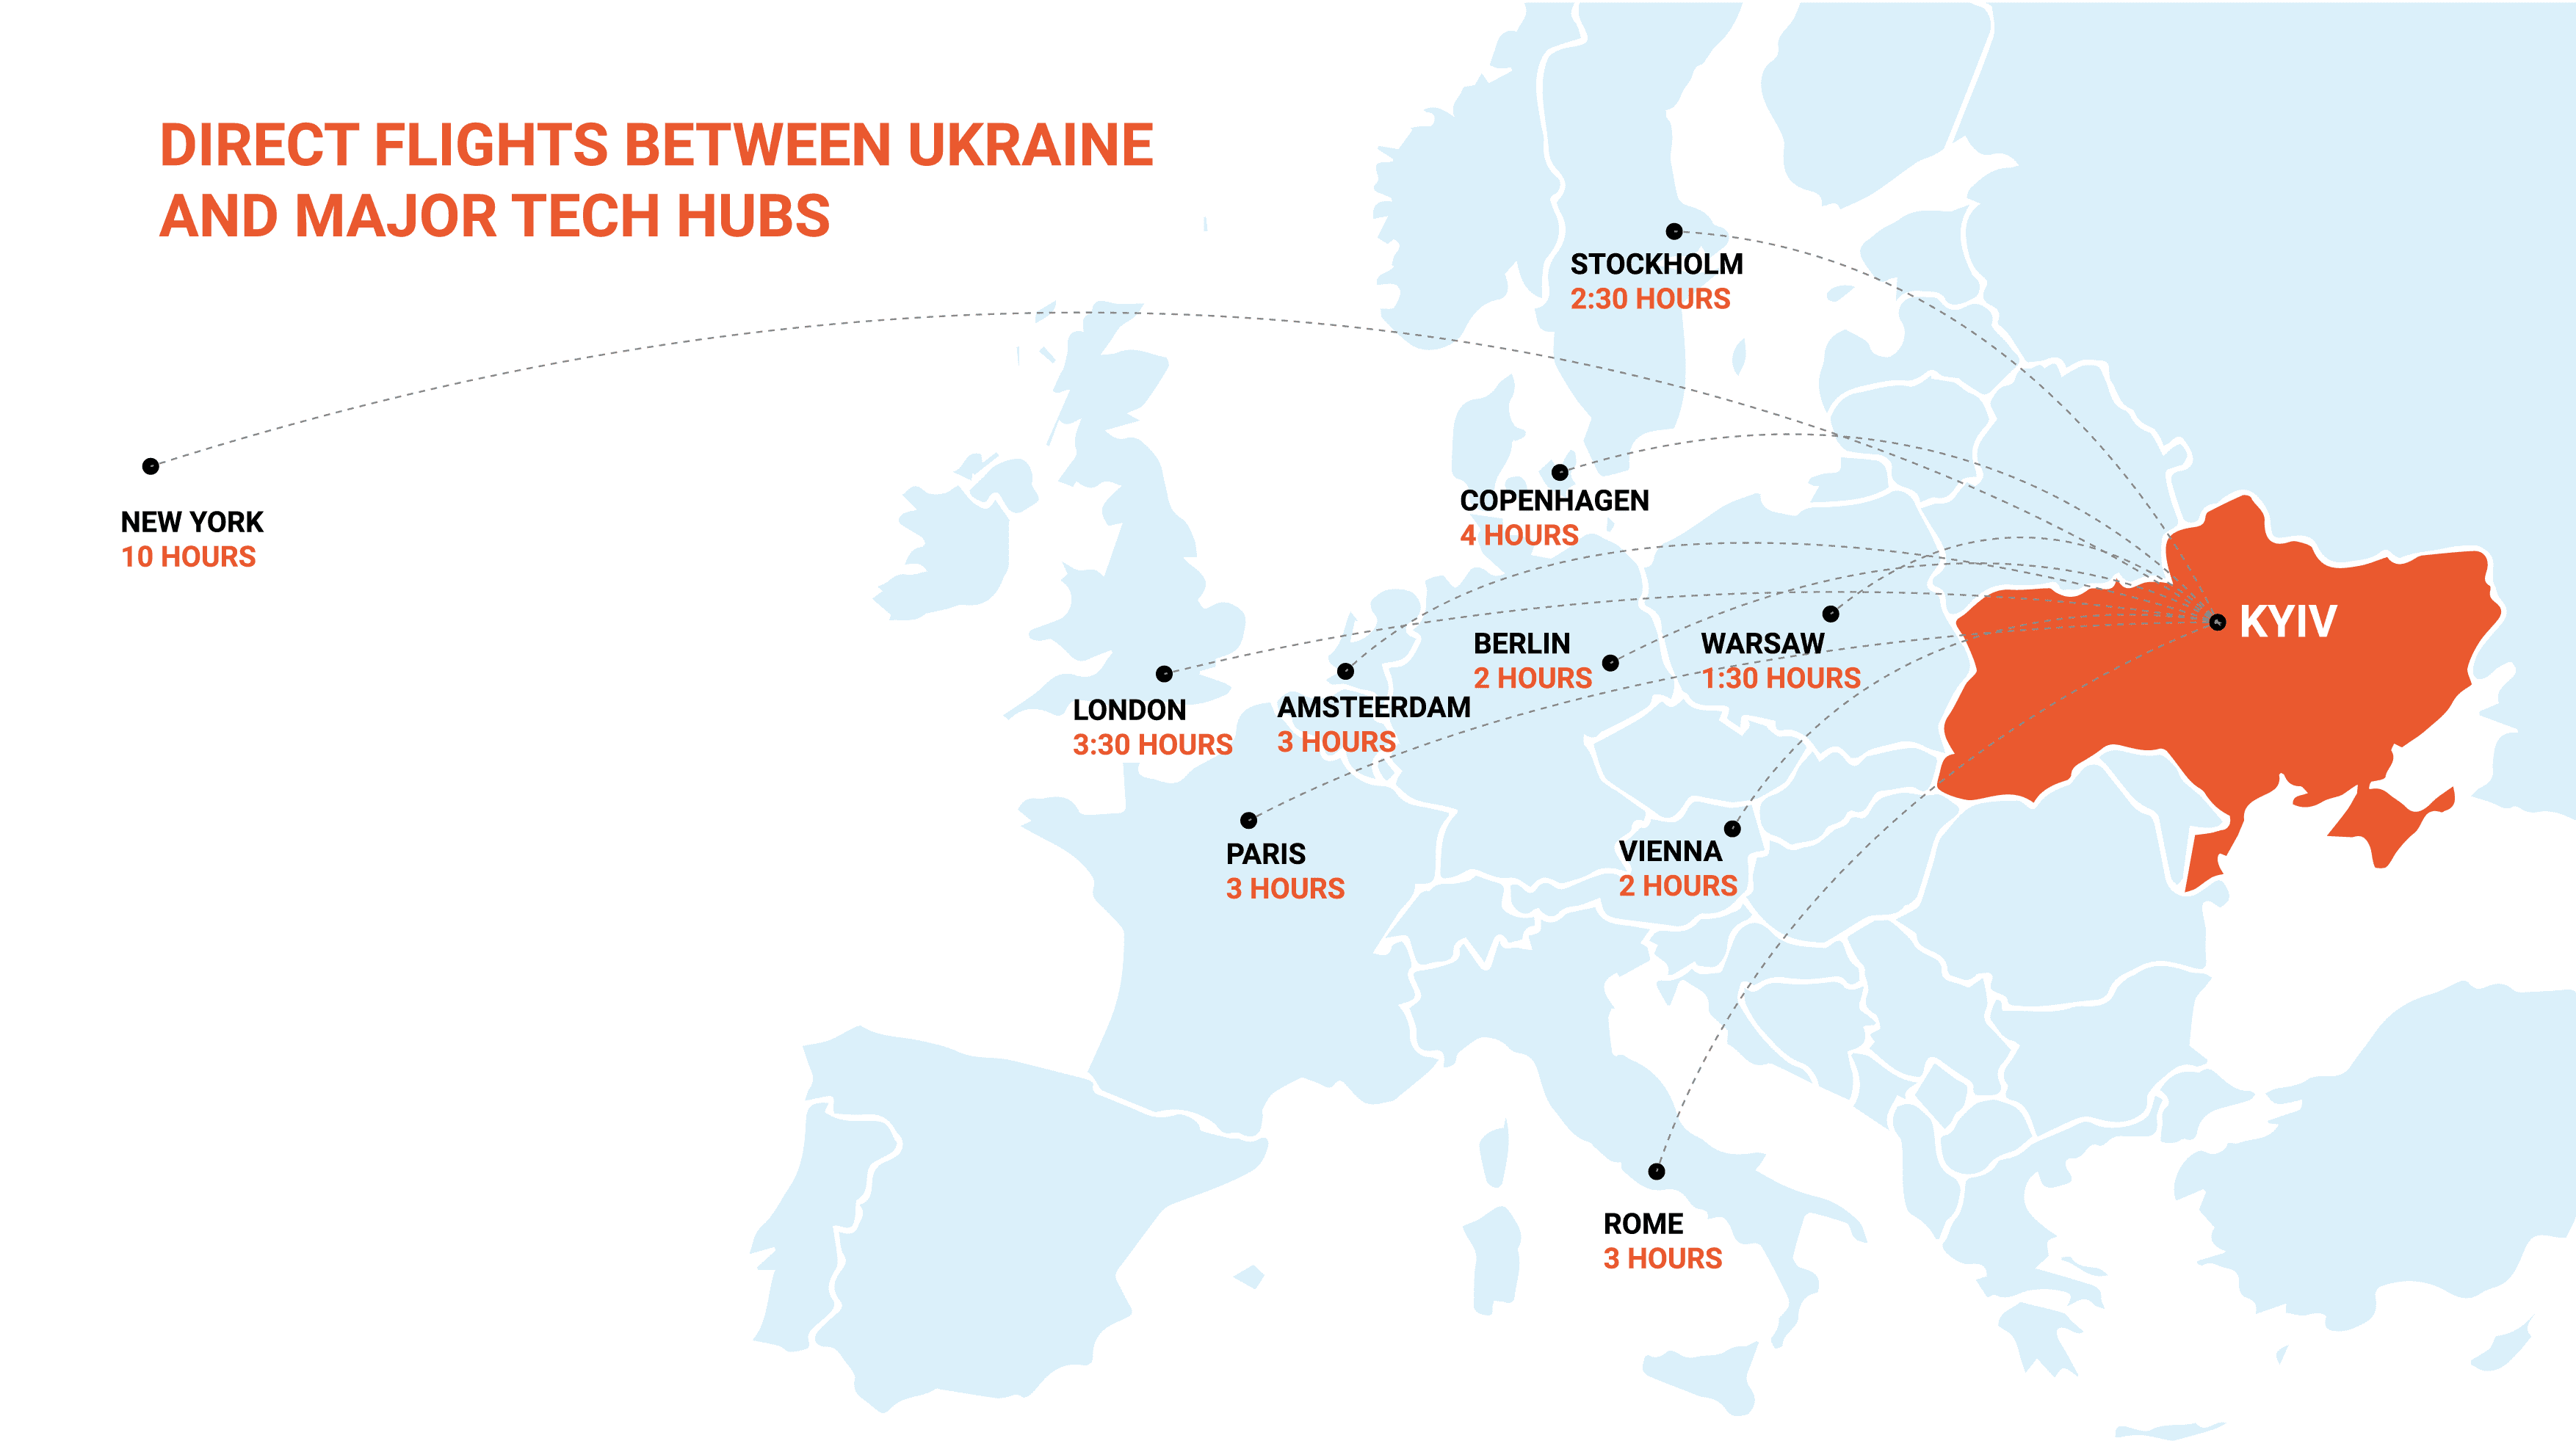  Direct flights between Ukraine and major tech hubs